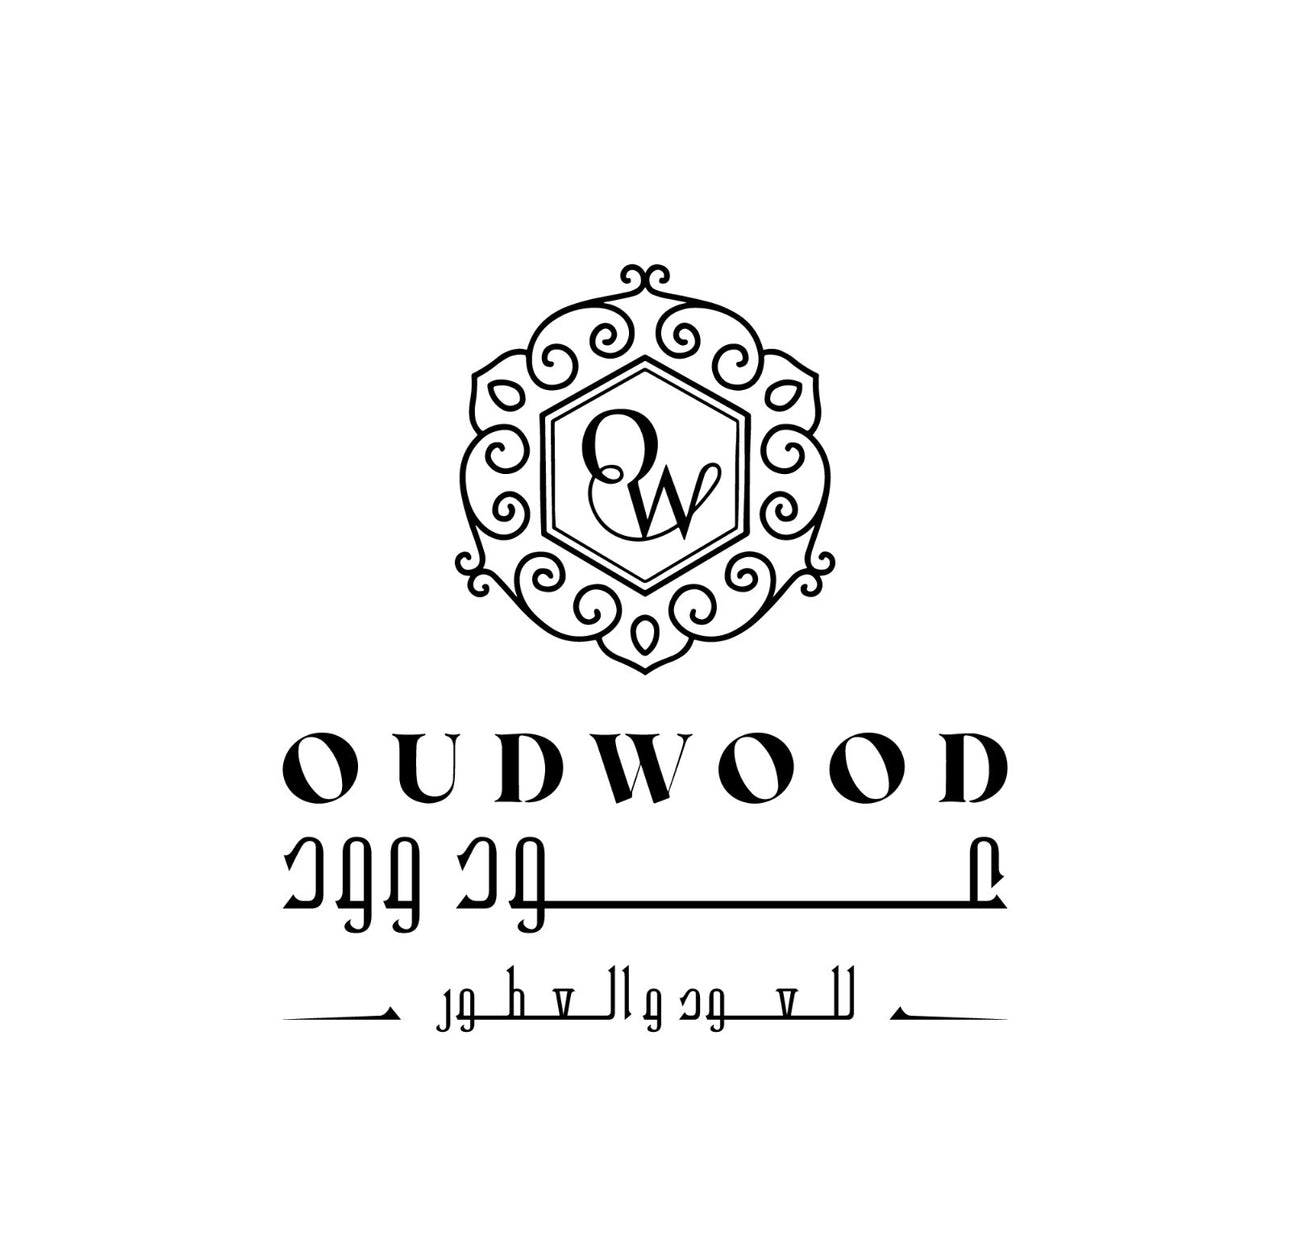 Oudwood